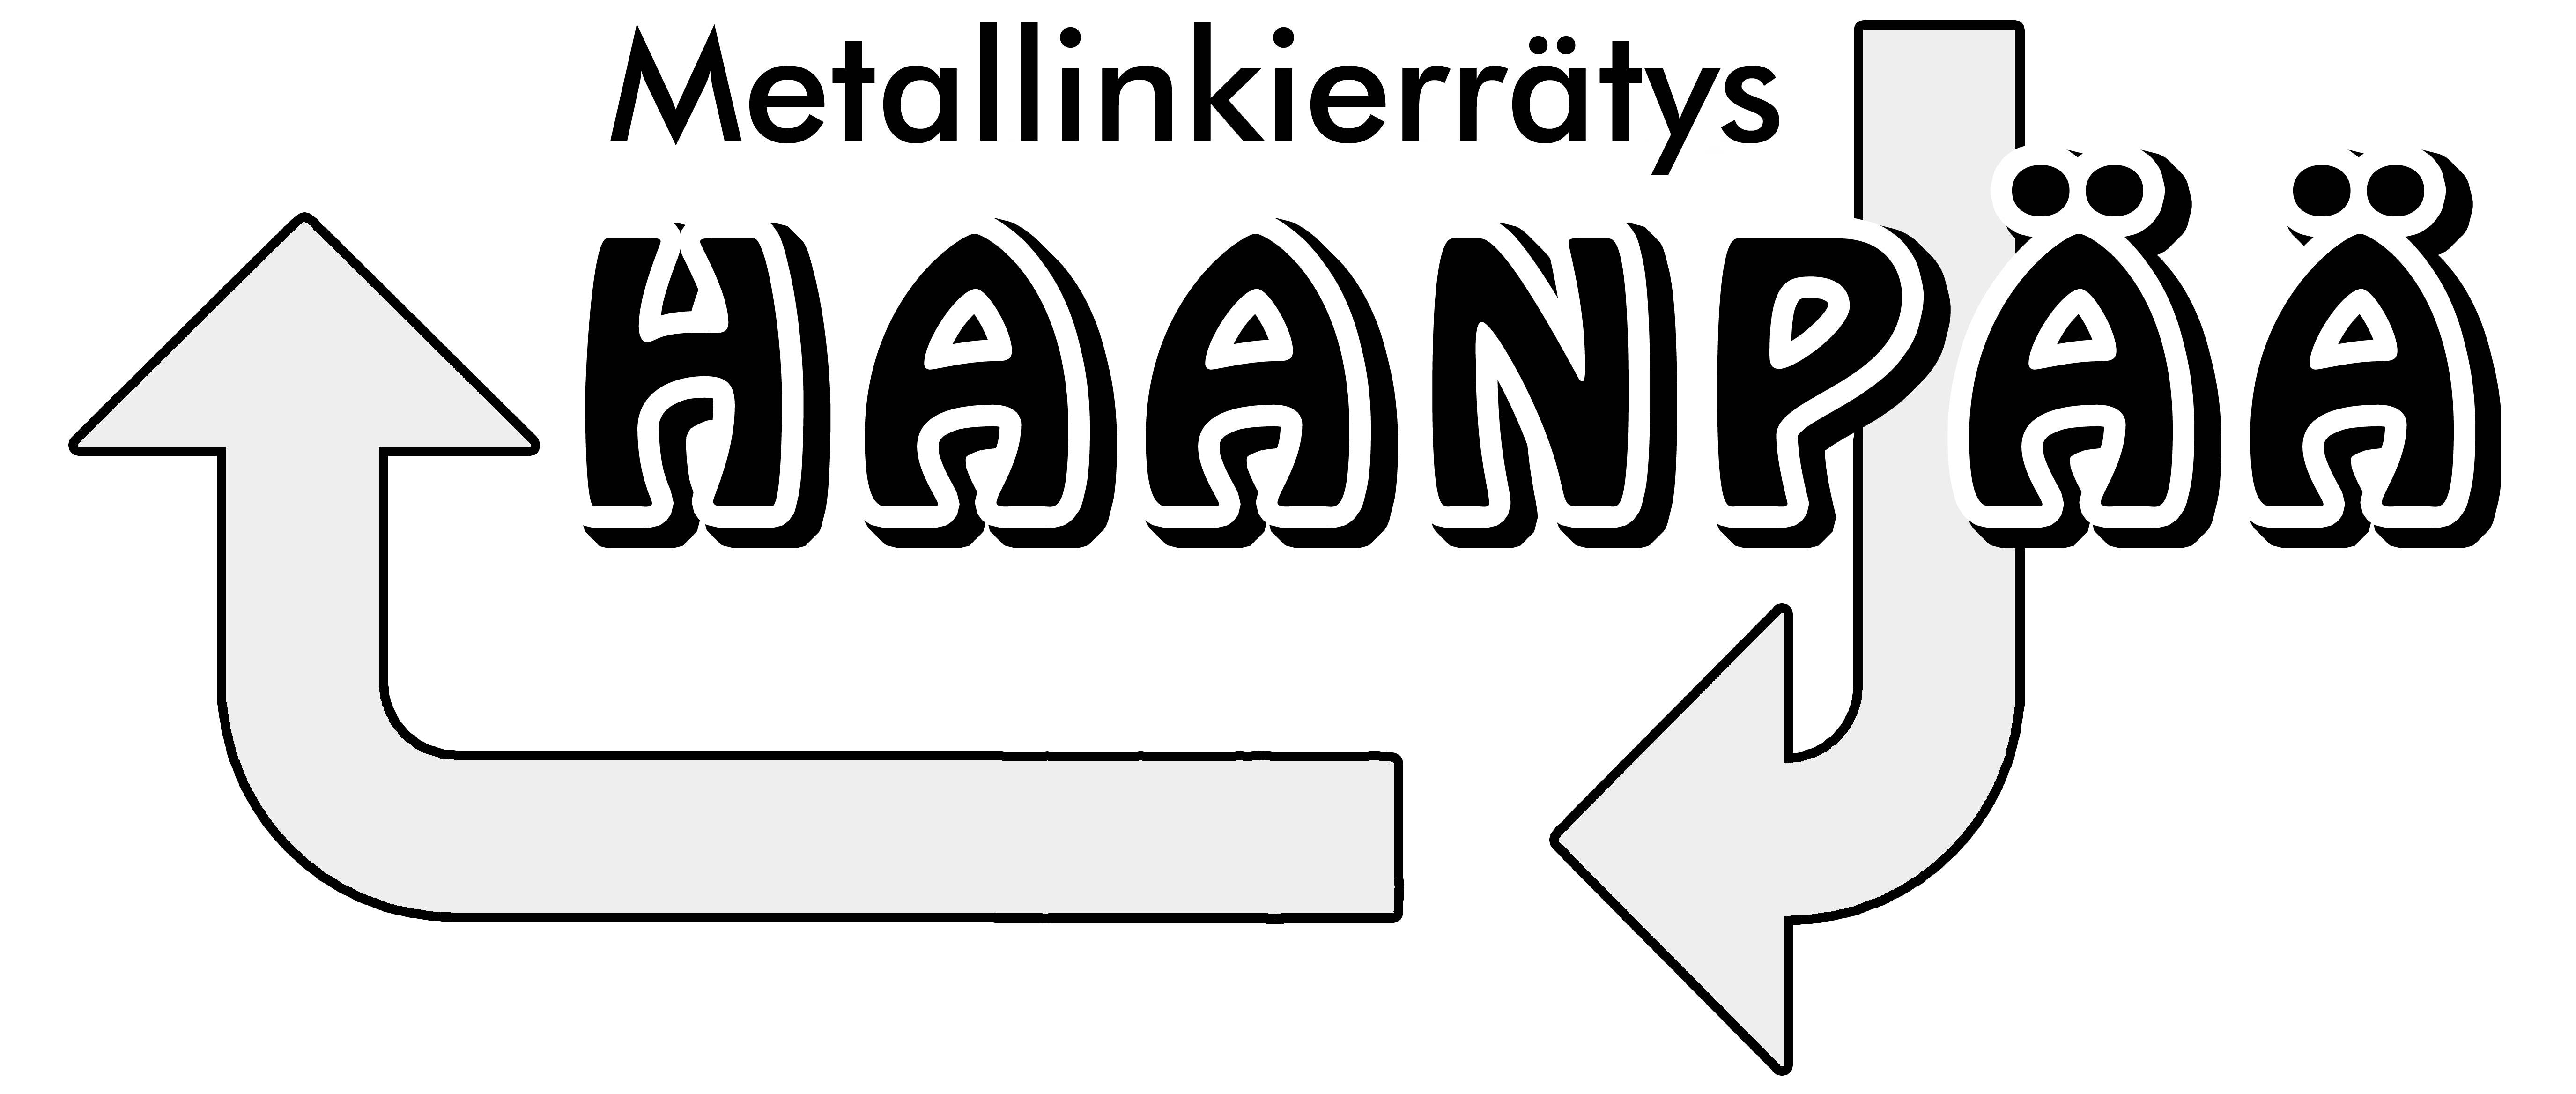 Metallinkierrätys Haanpää -logo